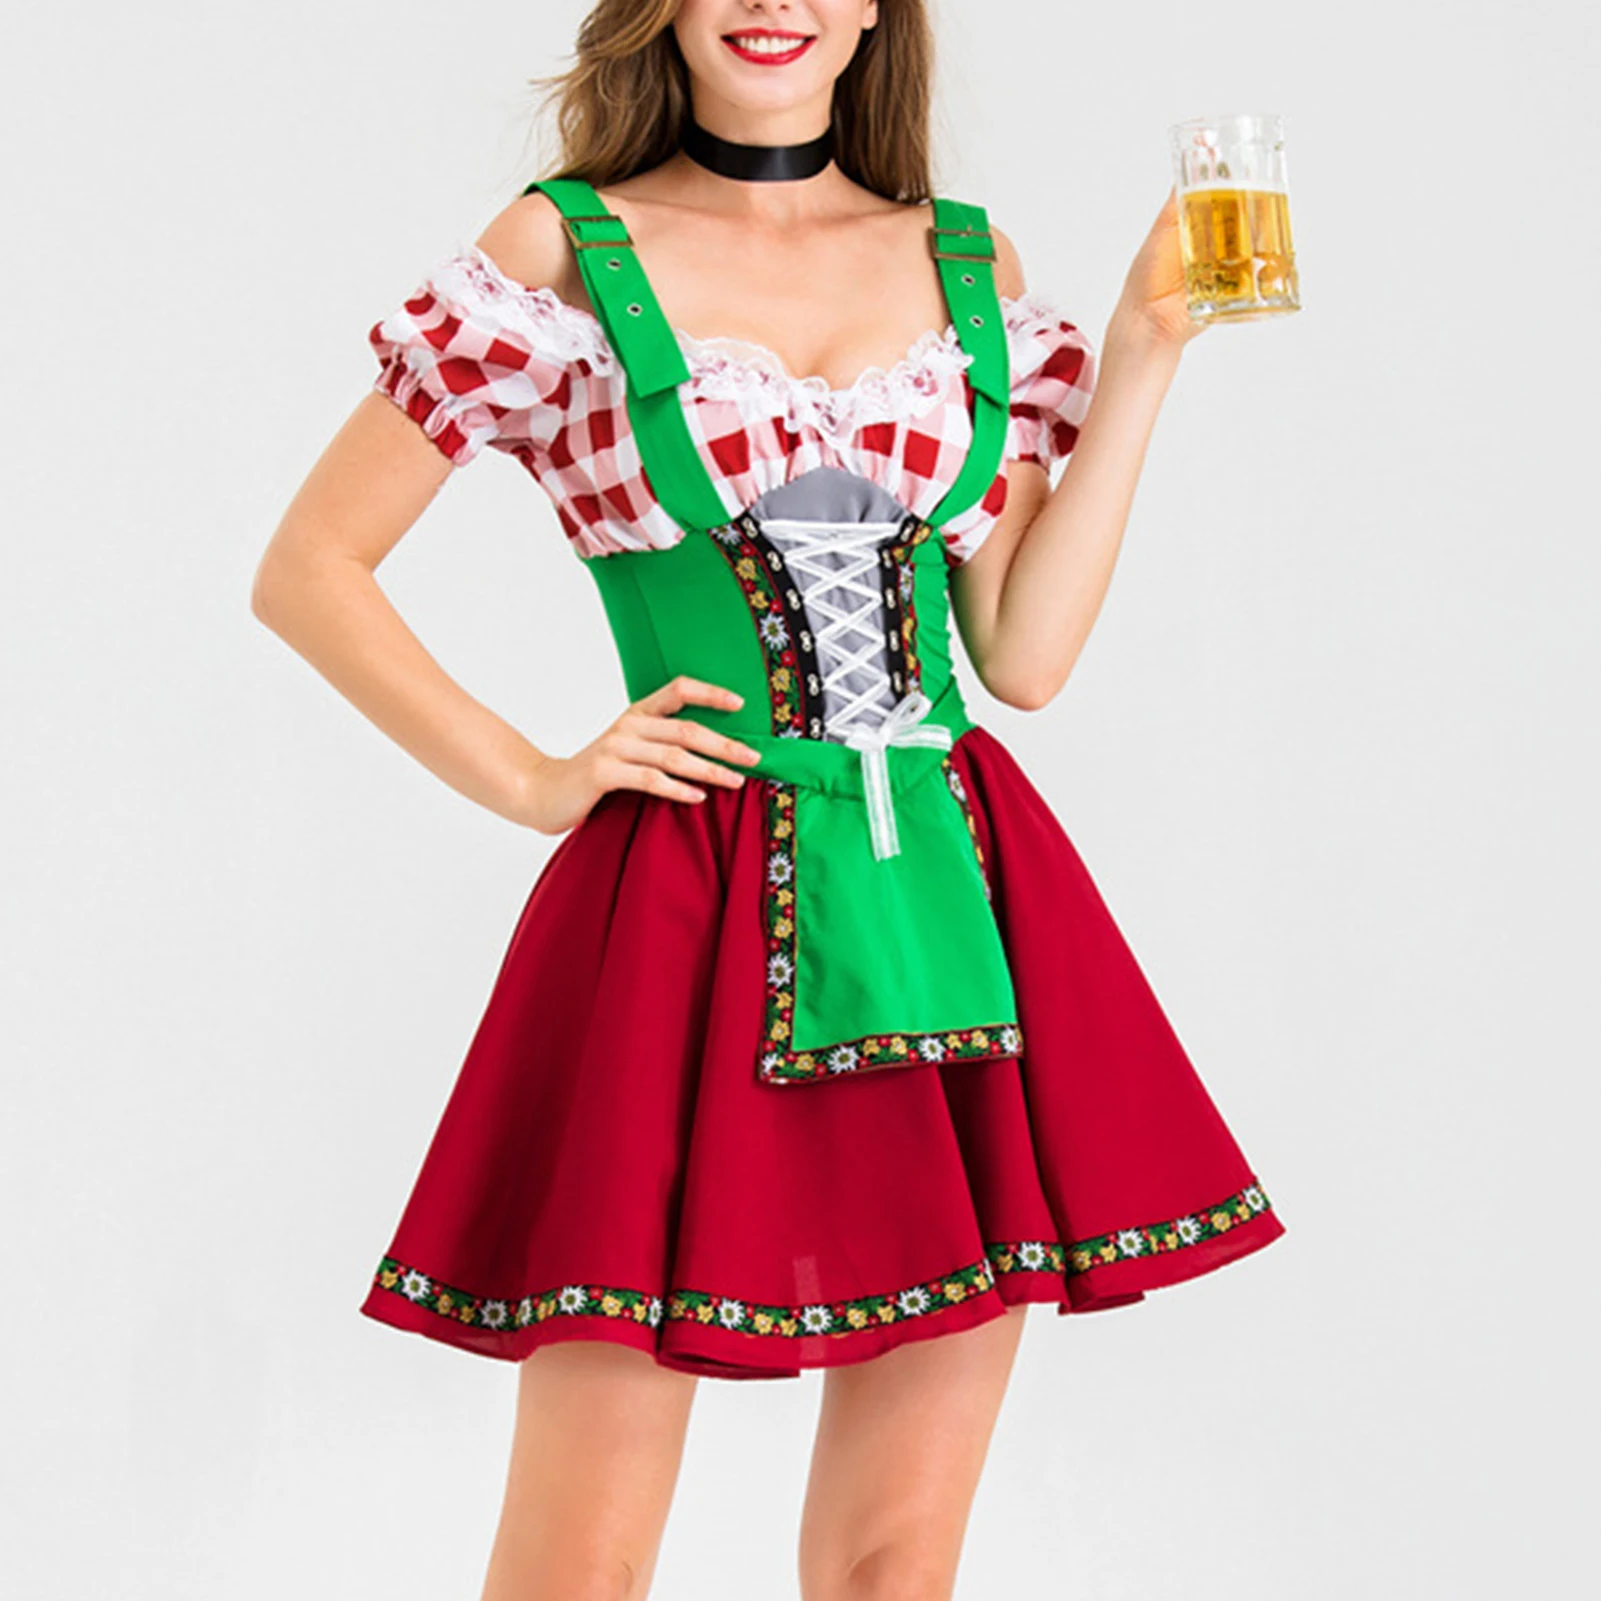 زي Oktoberfest الألماني للمرأة هالوين خادمة موحدة بار النادل خادمة الزي تأثيري الملابس سيدة مثير فستان النادل